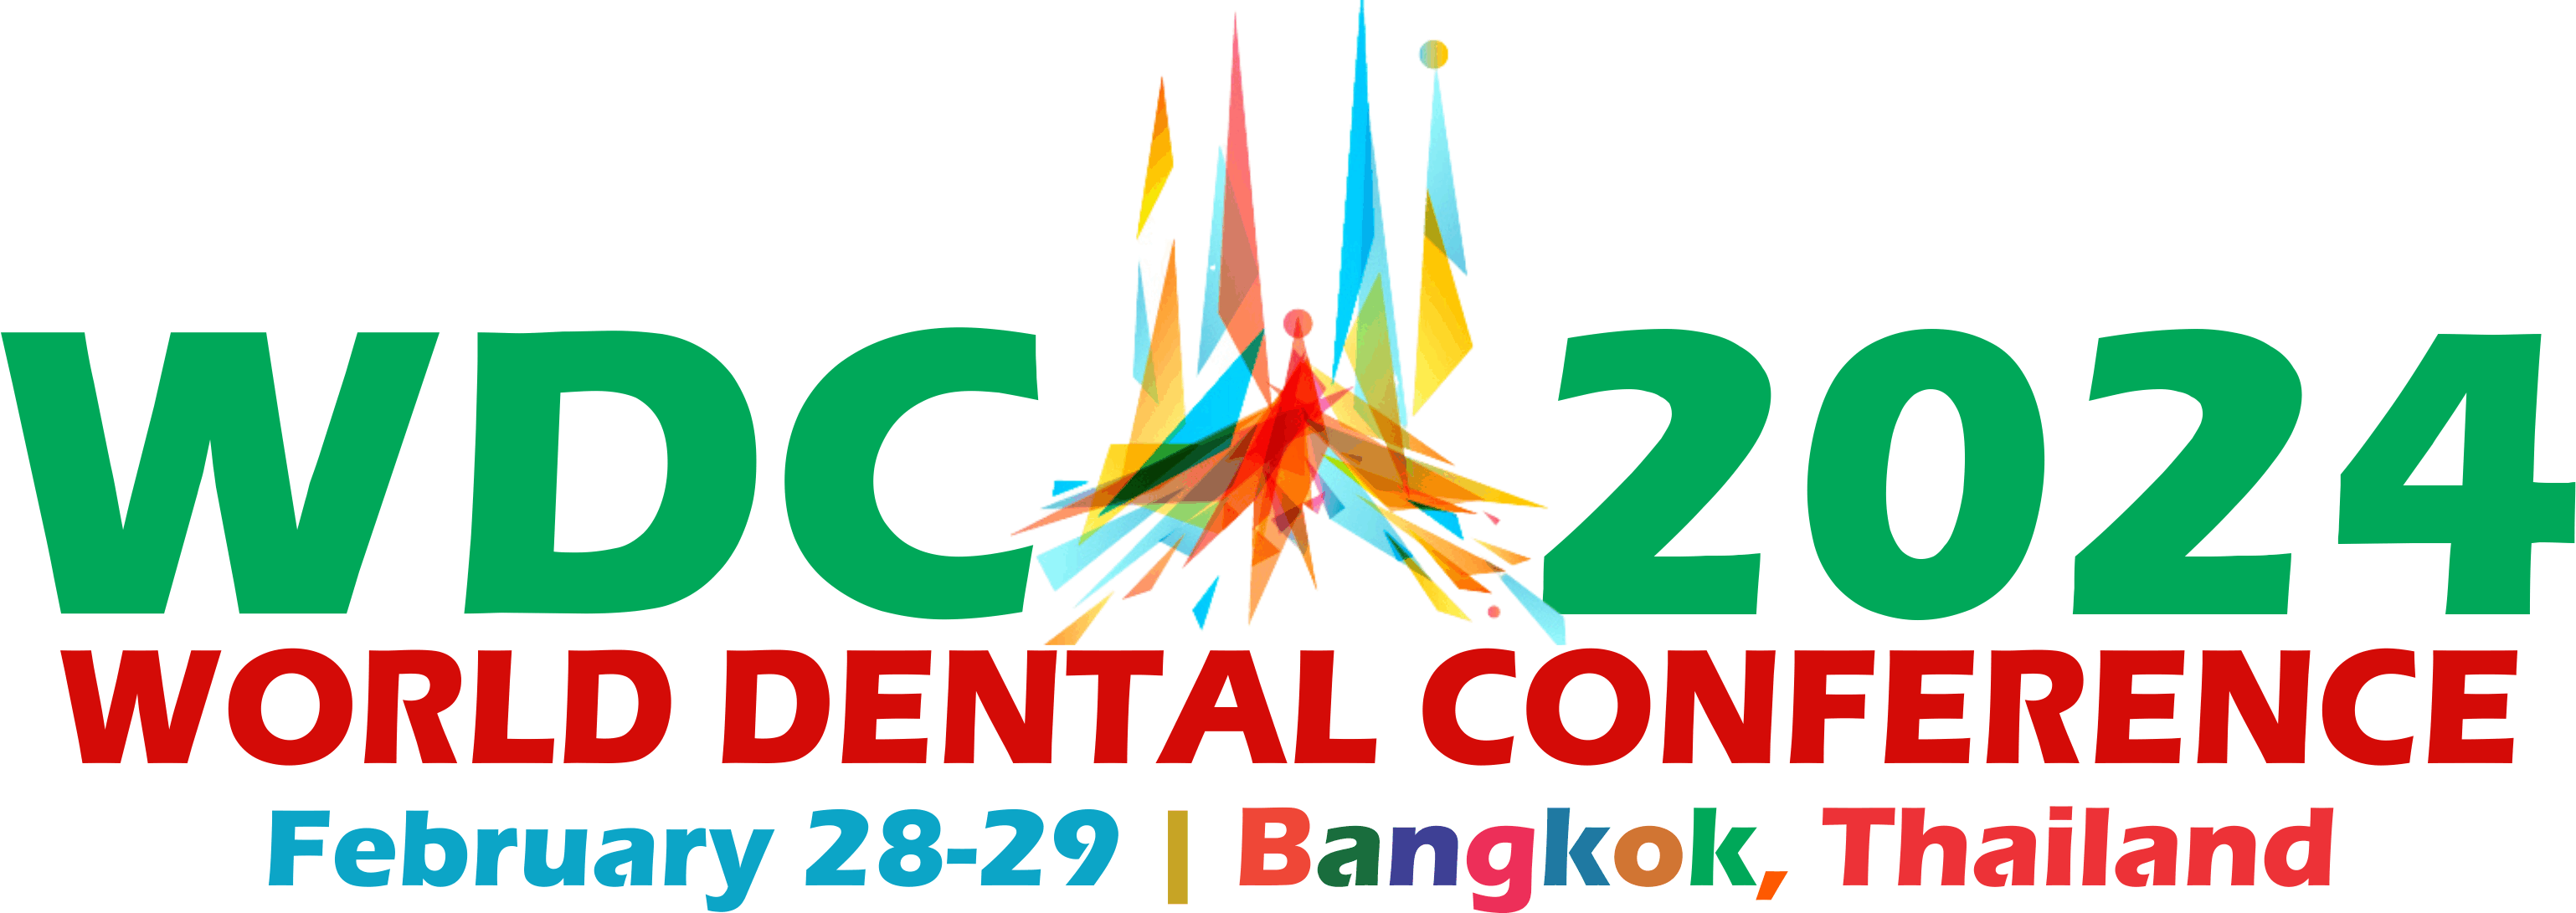 WDC 2024 World Dental Conference Dental Conferences 2024